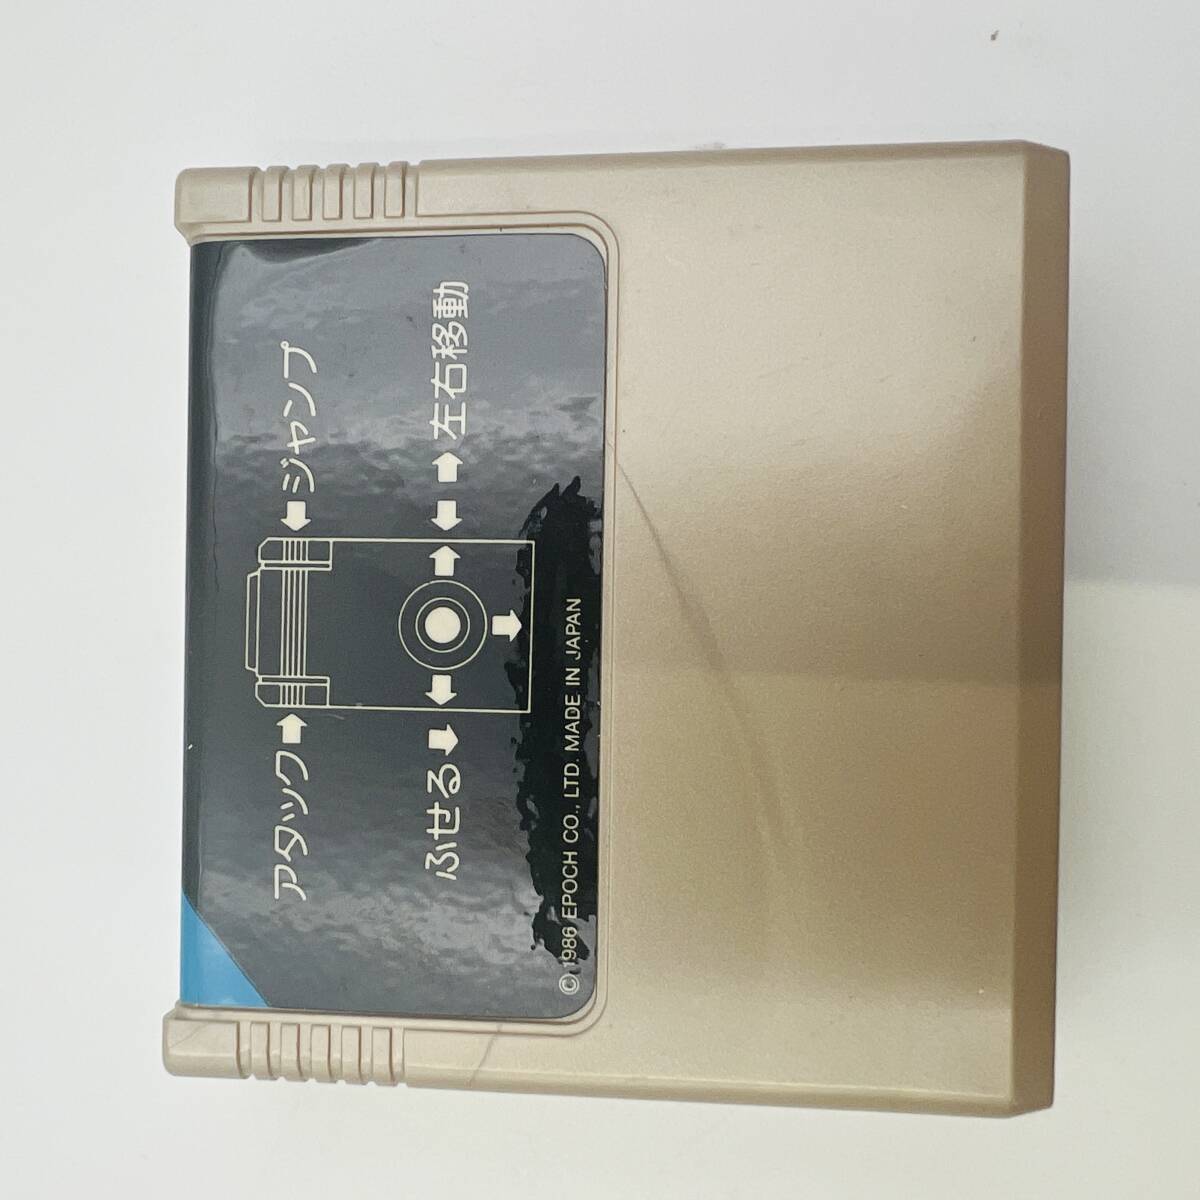 [408E] не использовался товар super кассета Vision soft waiwai Monstar Land коробка с руководством пользователя Epo k фирма TV игра игрушка магазин ликвидация запасов товар 